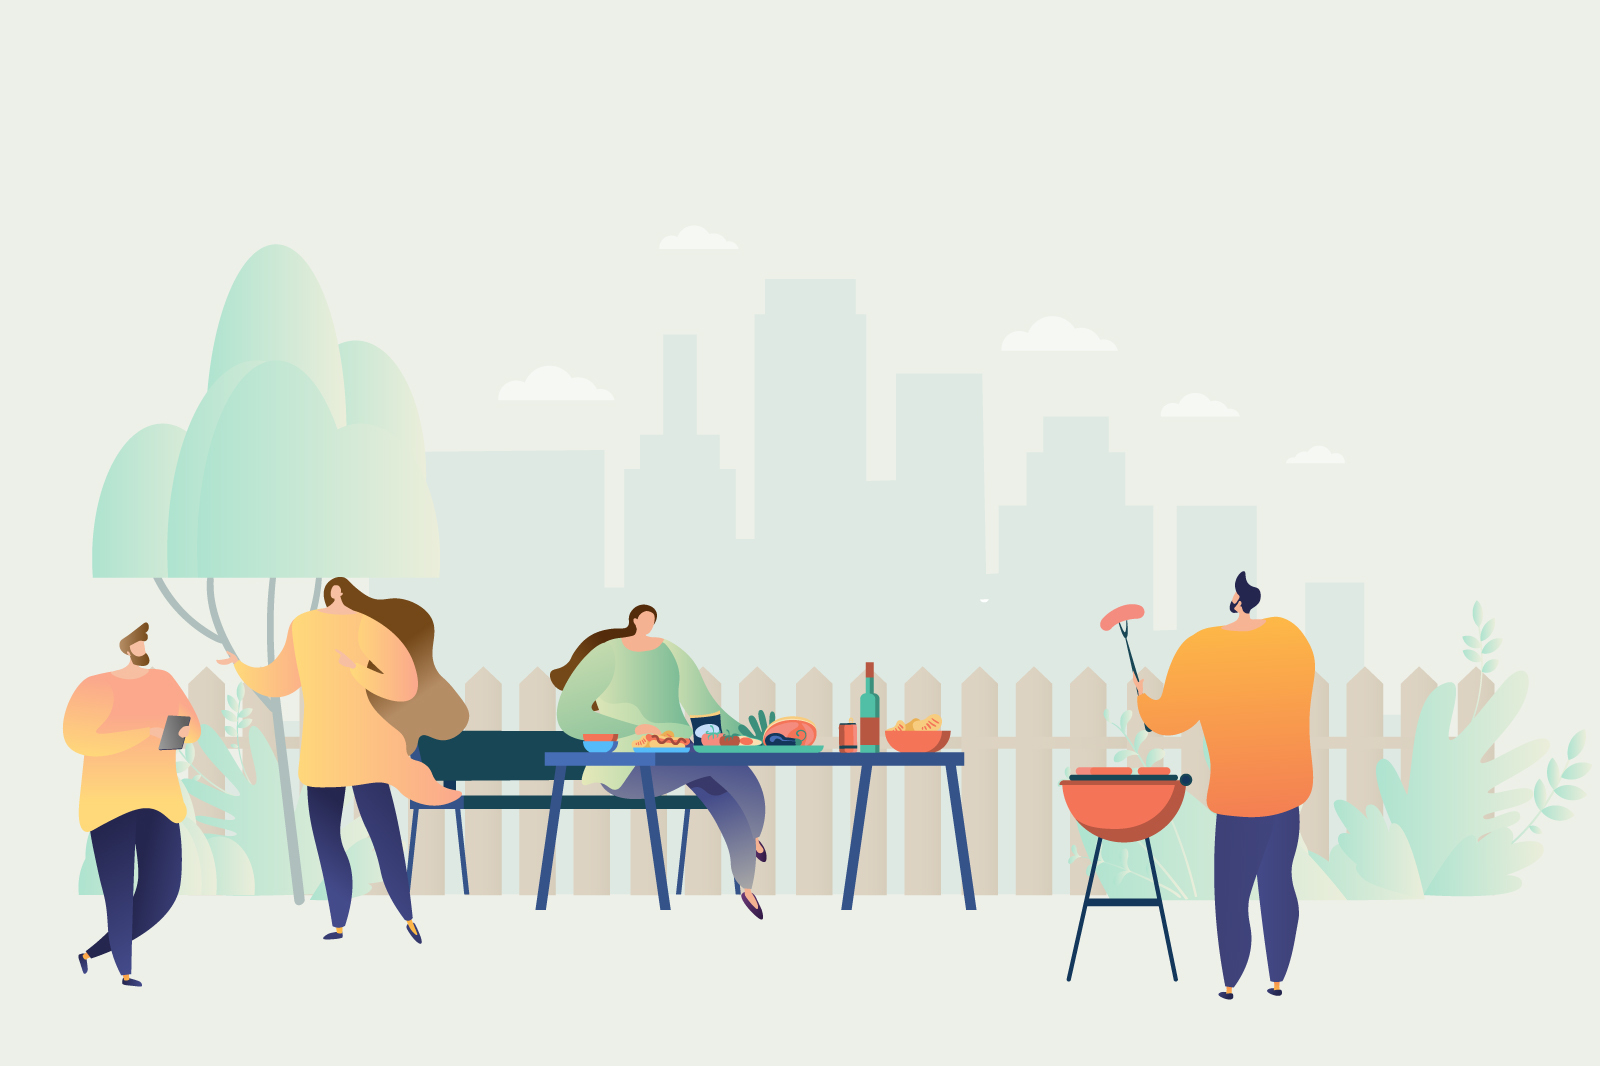 6 BBQ Catering Ideen fürs Firmen-Grillevent 2021